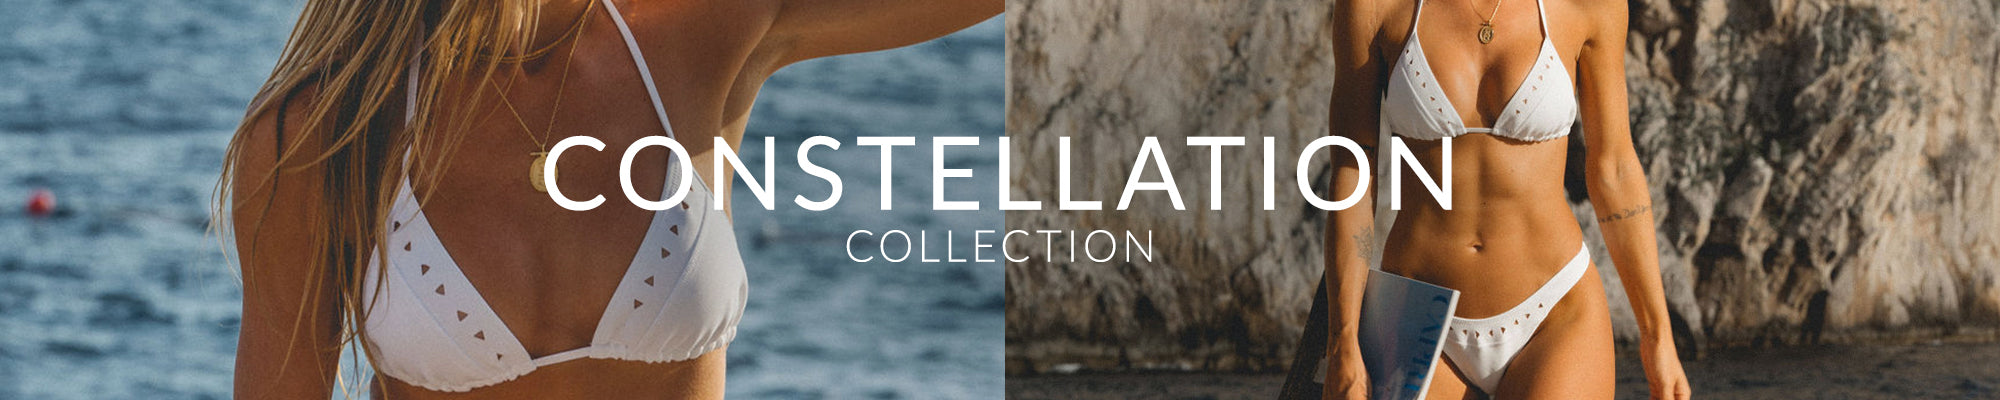 Women's Swimwear: Constellation White Collection